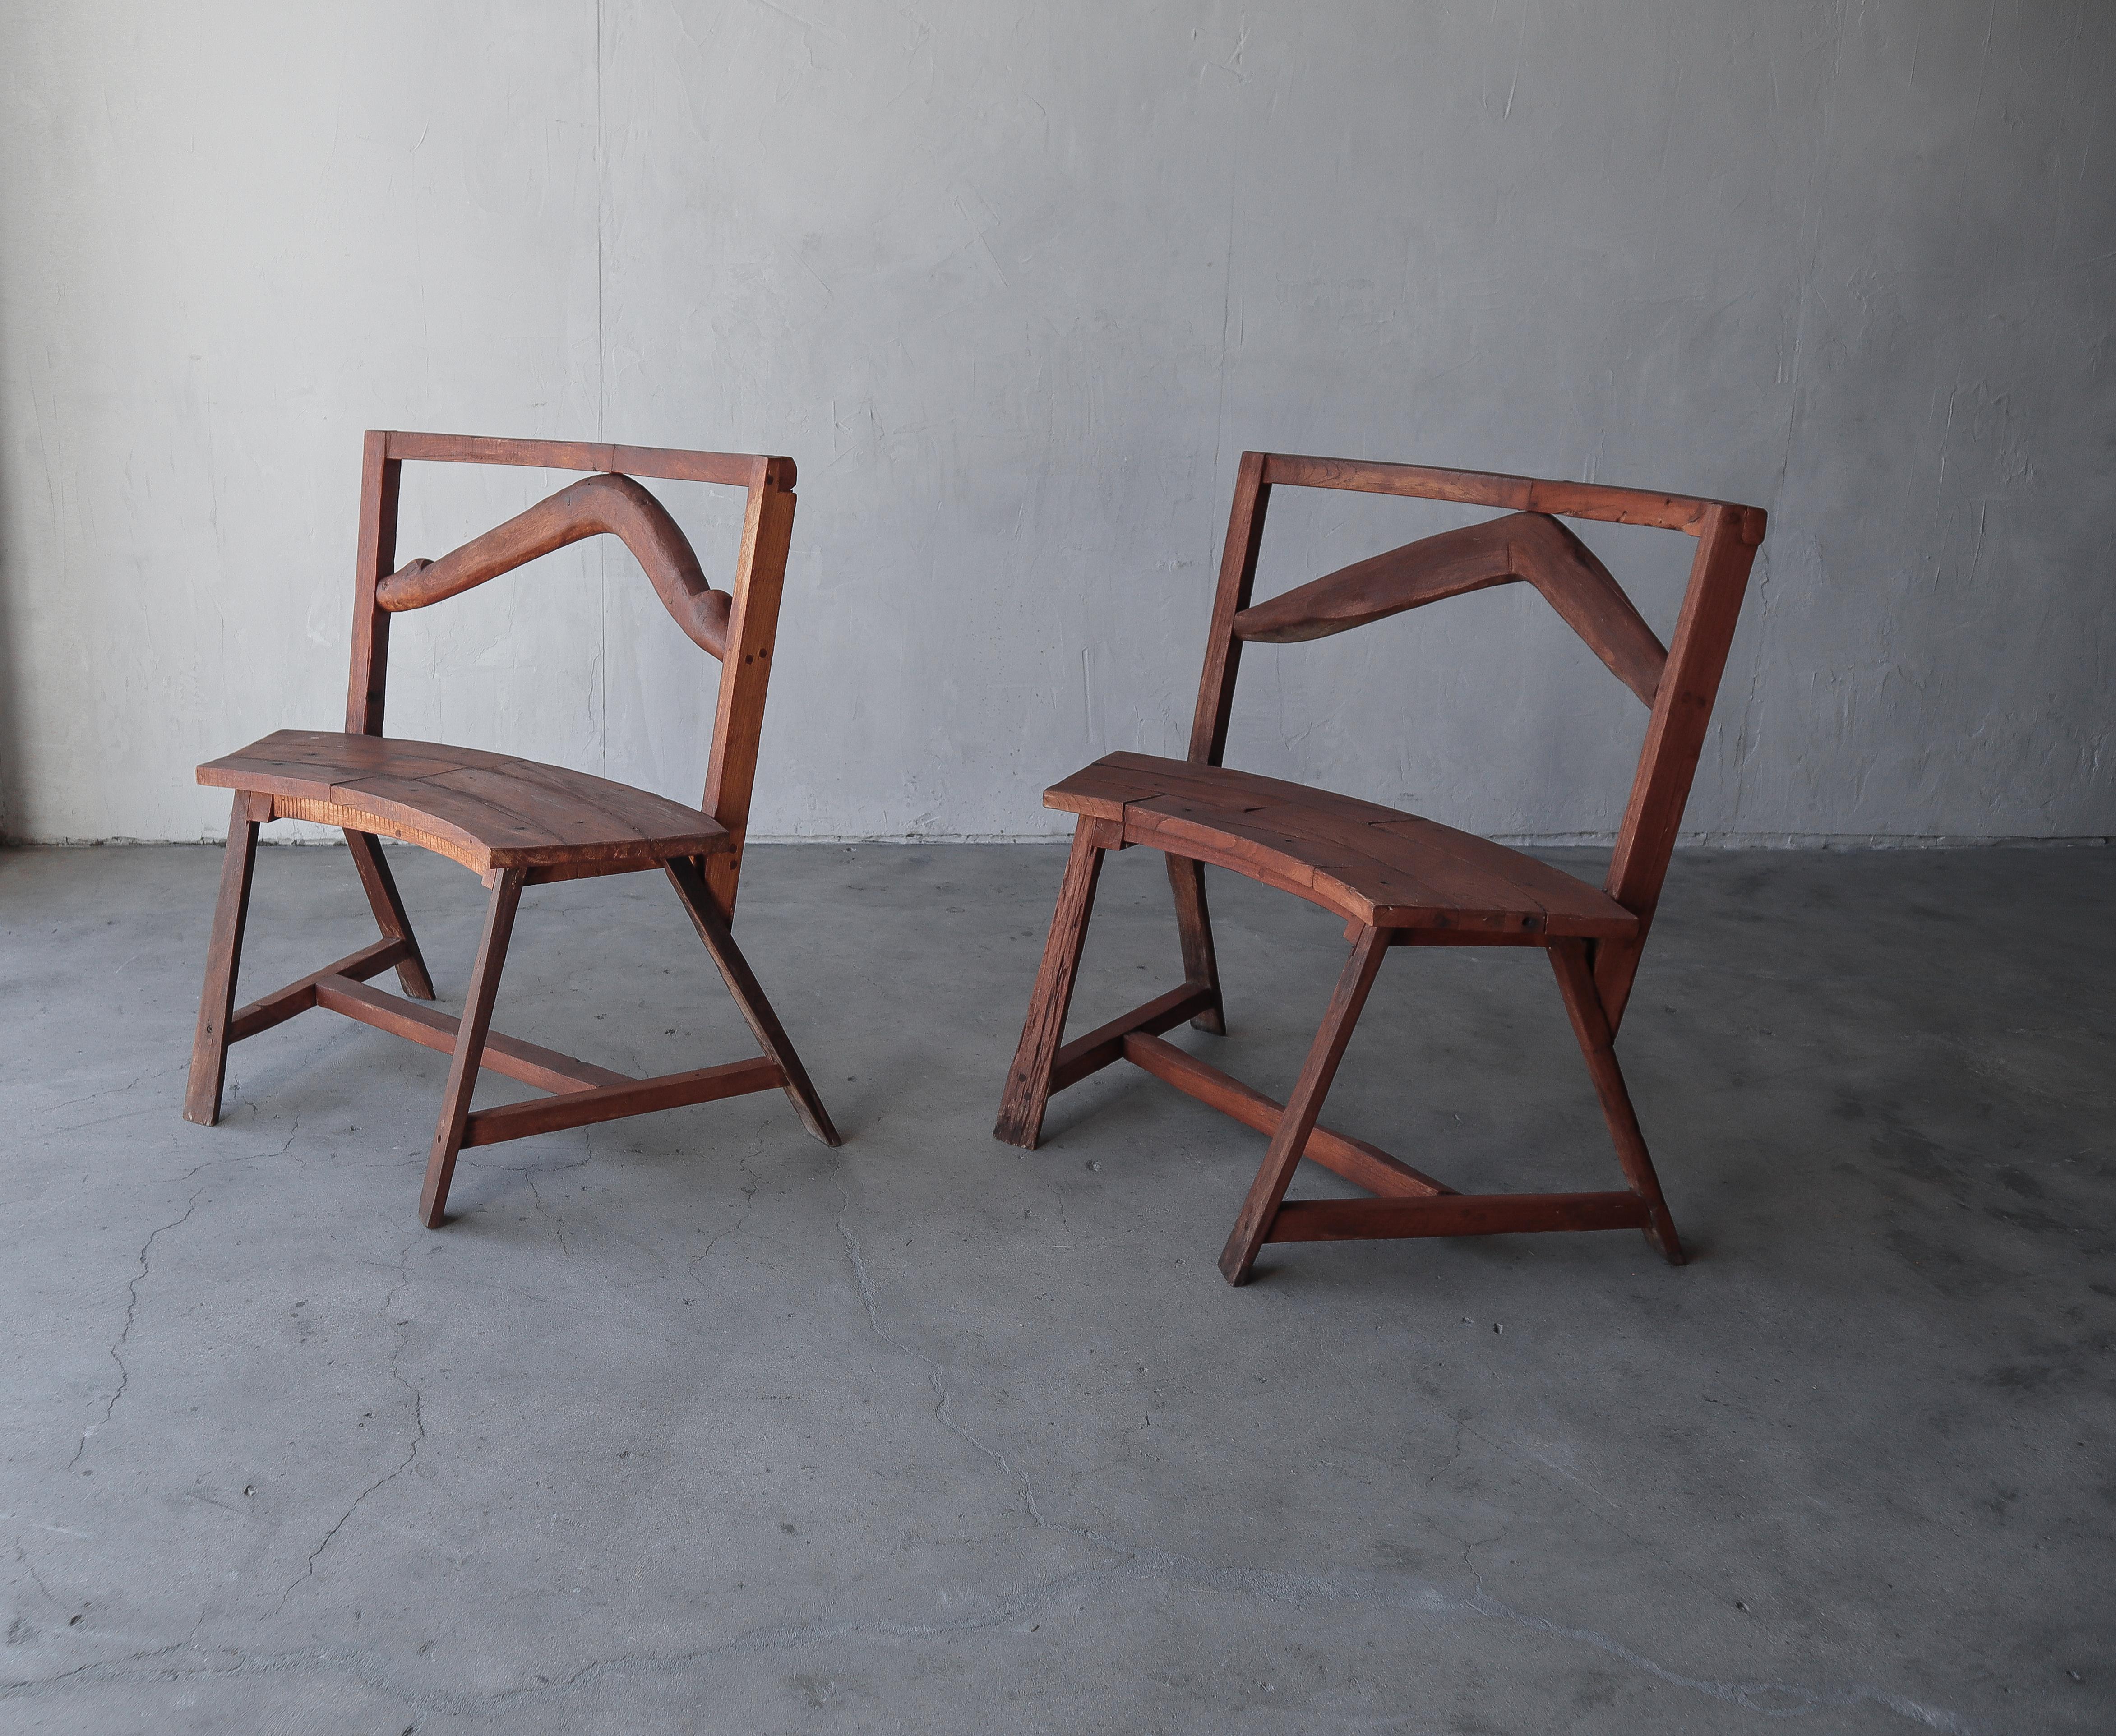 Superbe paire de chaises primitives sur mesure de style banc. Cette paire est incroyable, les photos ne leur rendent pas justice. Si vous êtes à la recherche d'une paire de chaises uniques, ne cherchez pas plus loin. Leur style wabsabi et les